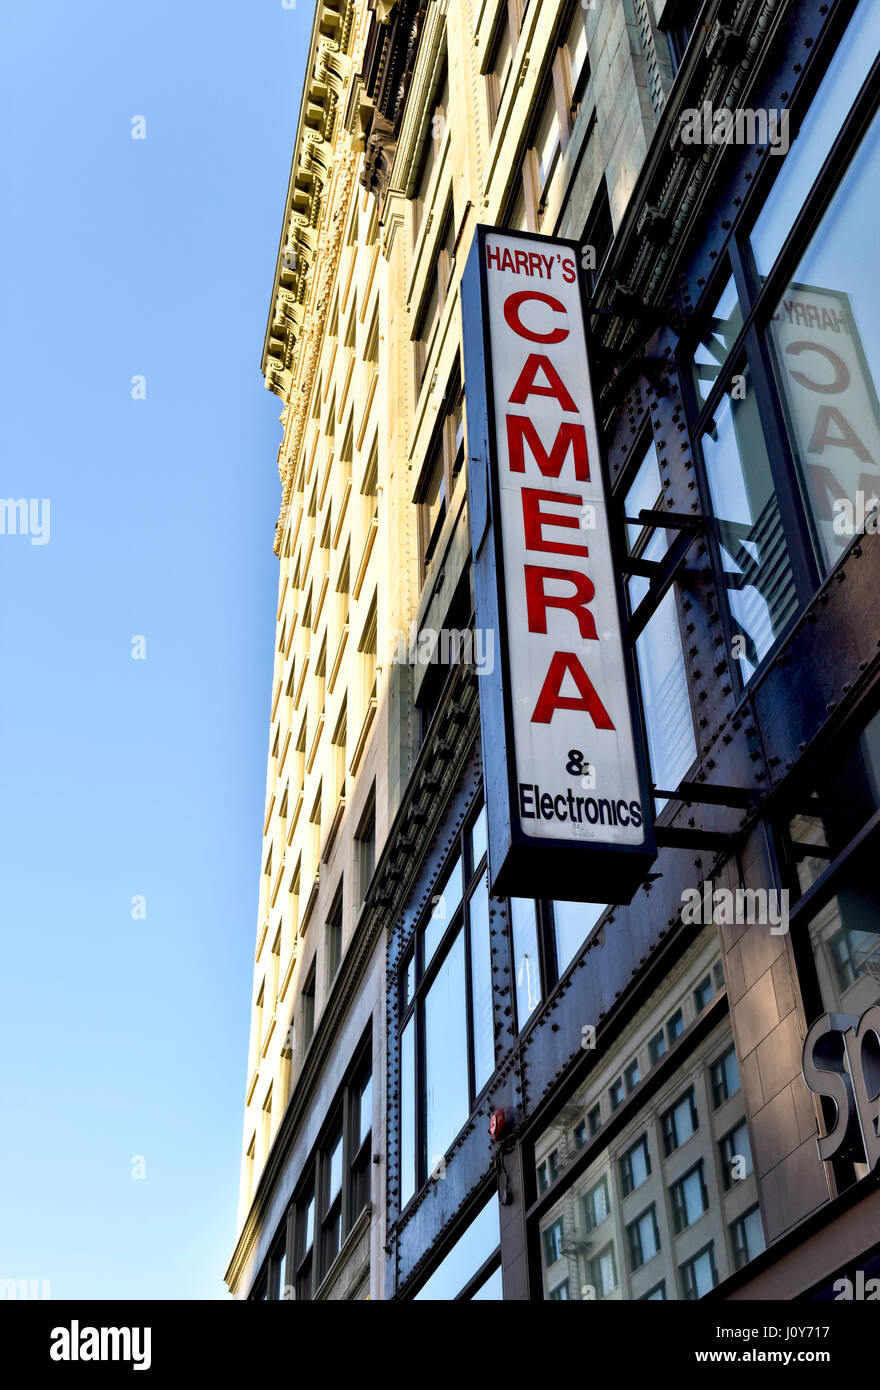 Un segno per Harry la telecamera e Elettronica nel centro di Los Angeles in California Foto Stock